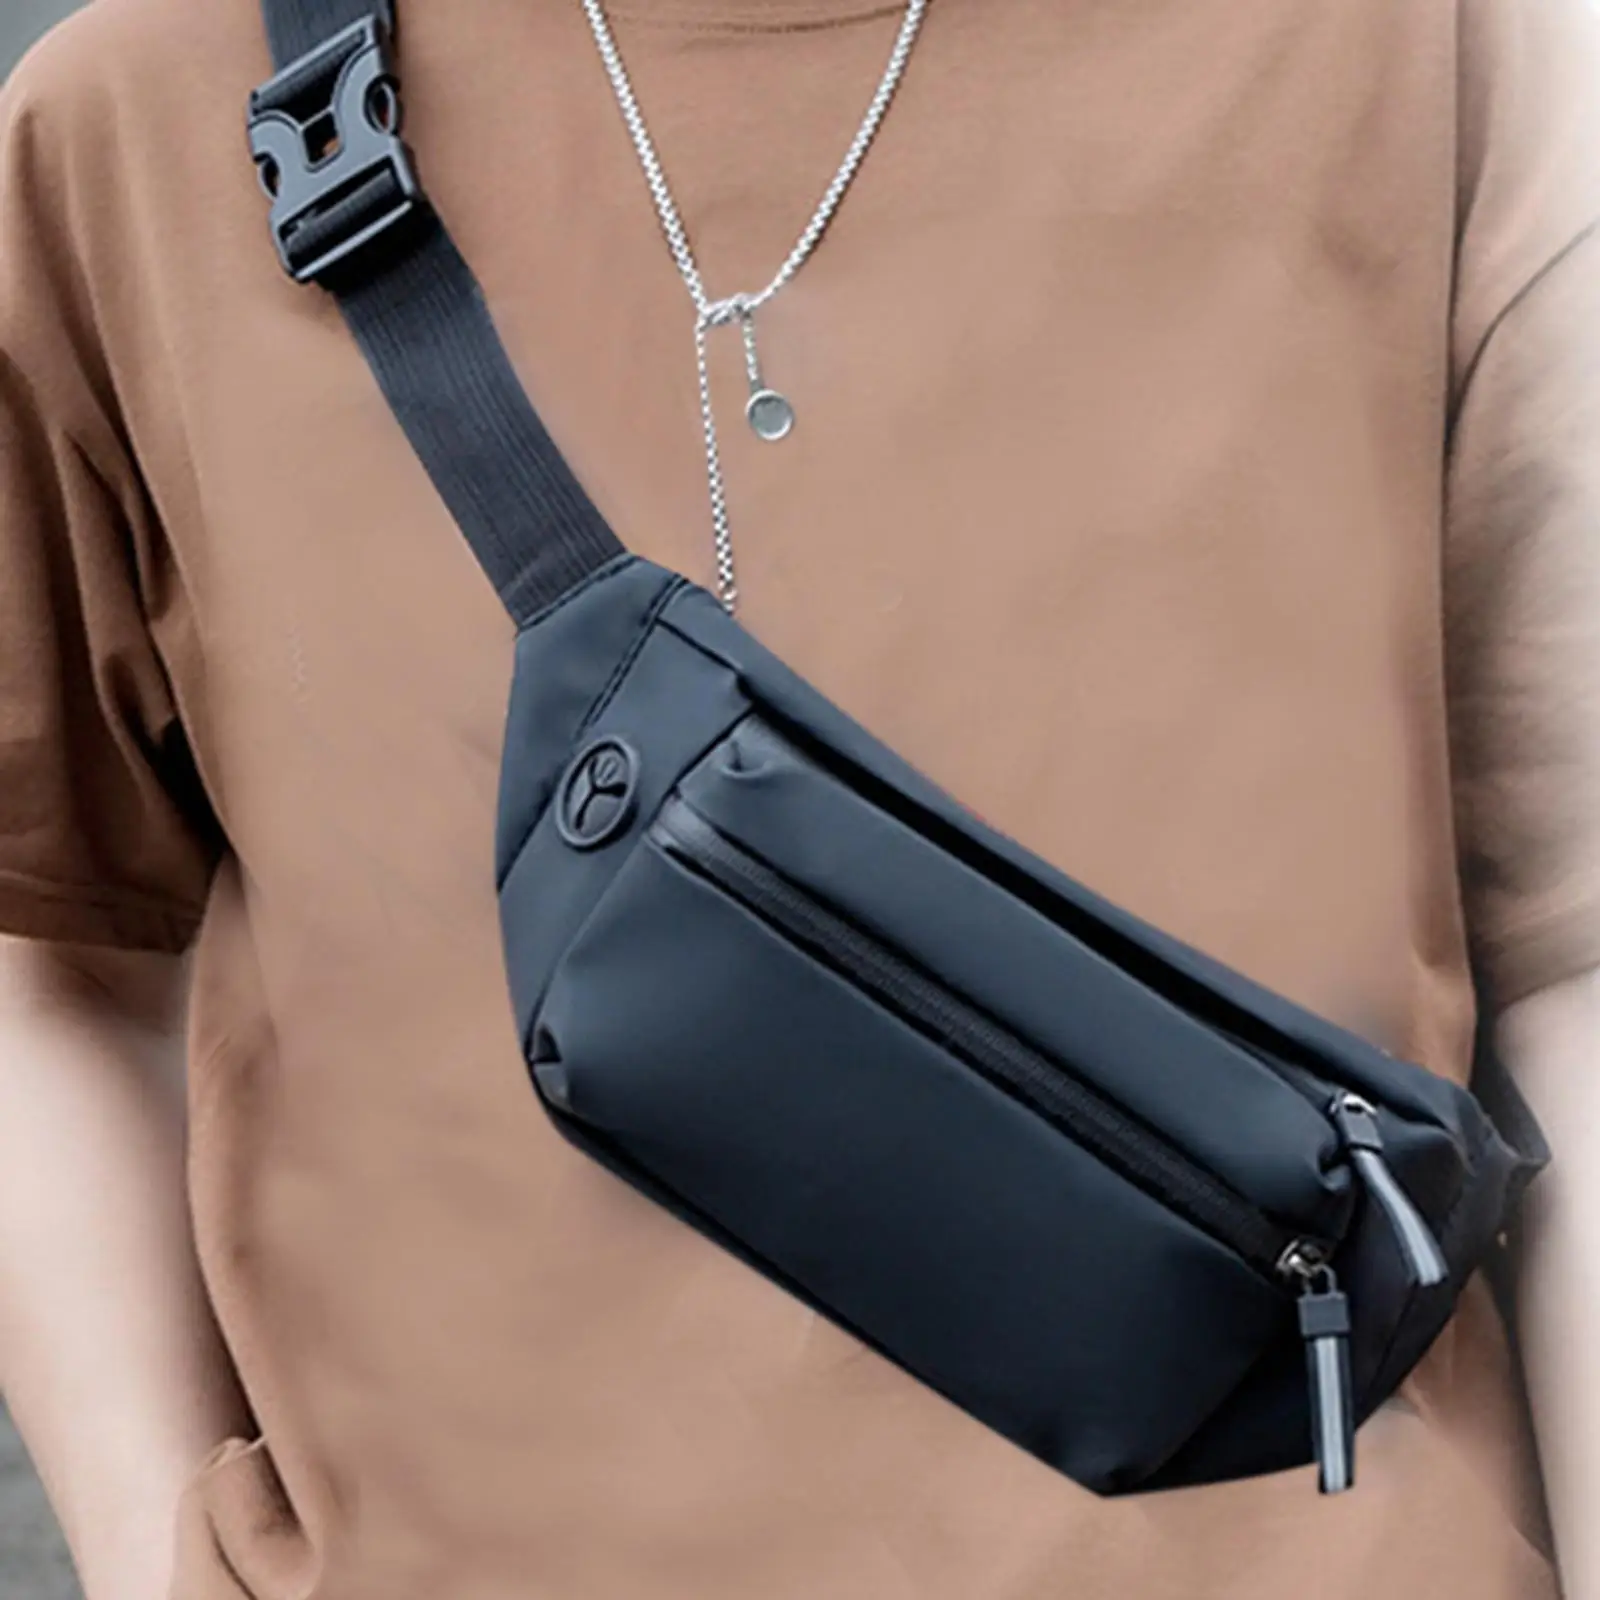 Shoulder Bag Lightweight Compact with Zipper Pocket Adjustable Shoulder Backpack for Hiking Sport Outdoor Travel Casual